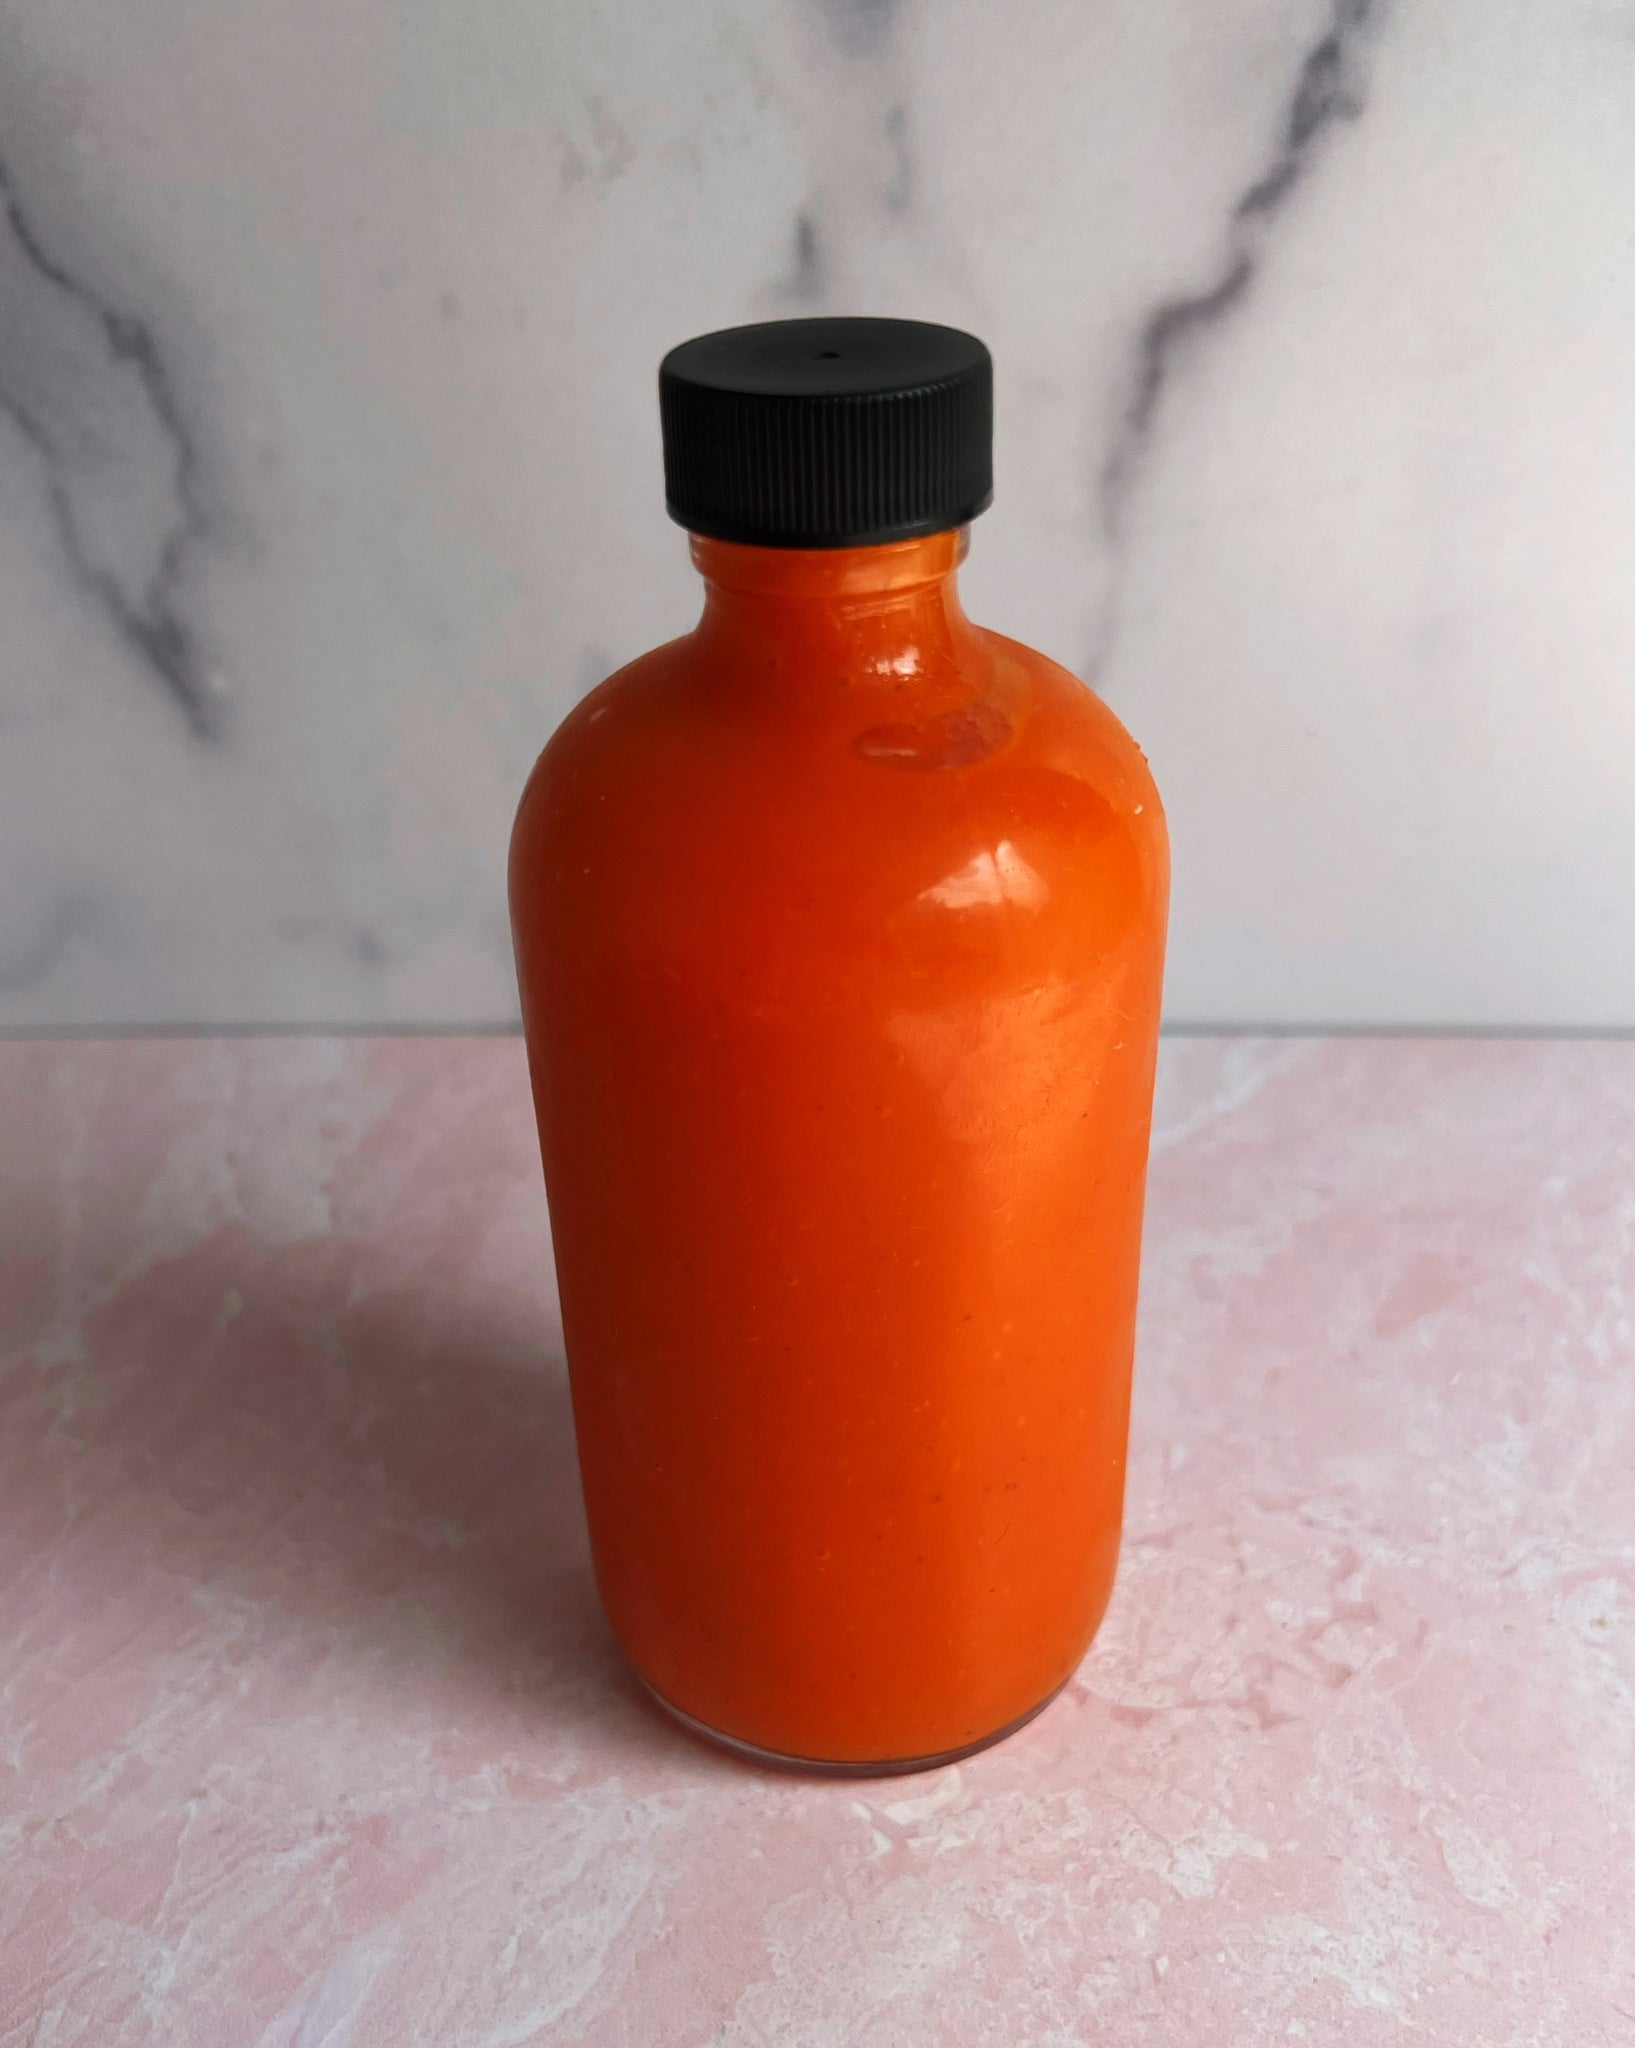 Fermented Carrot Hot Sauce